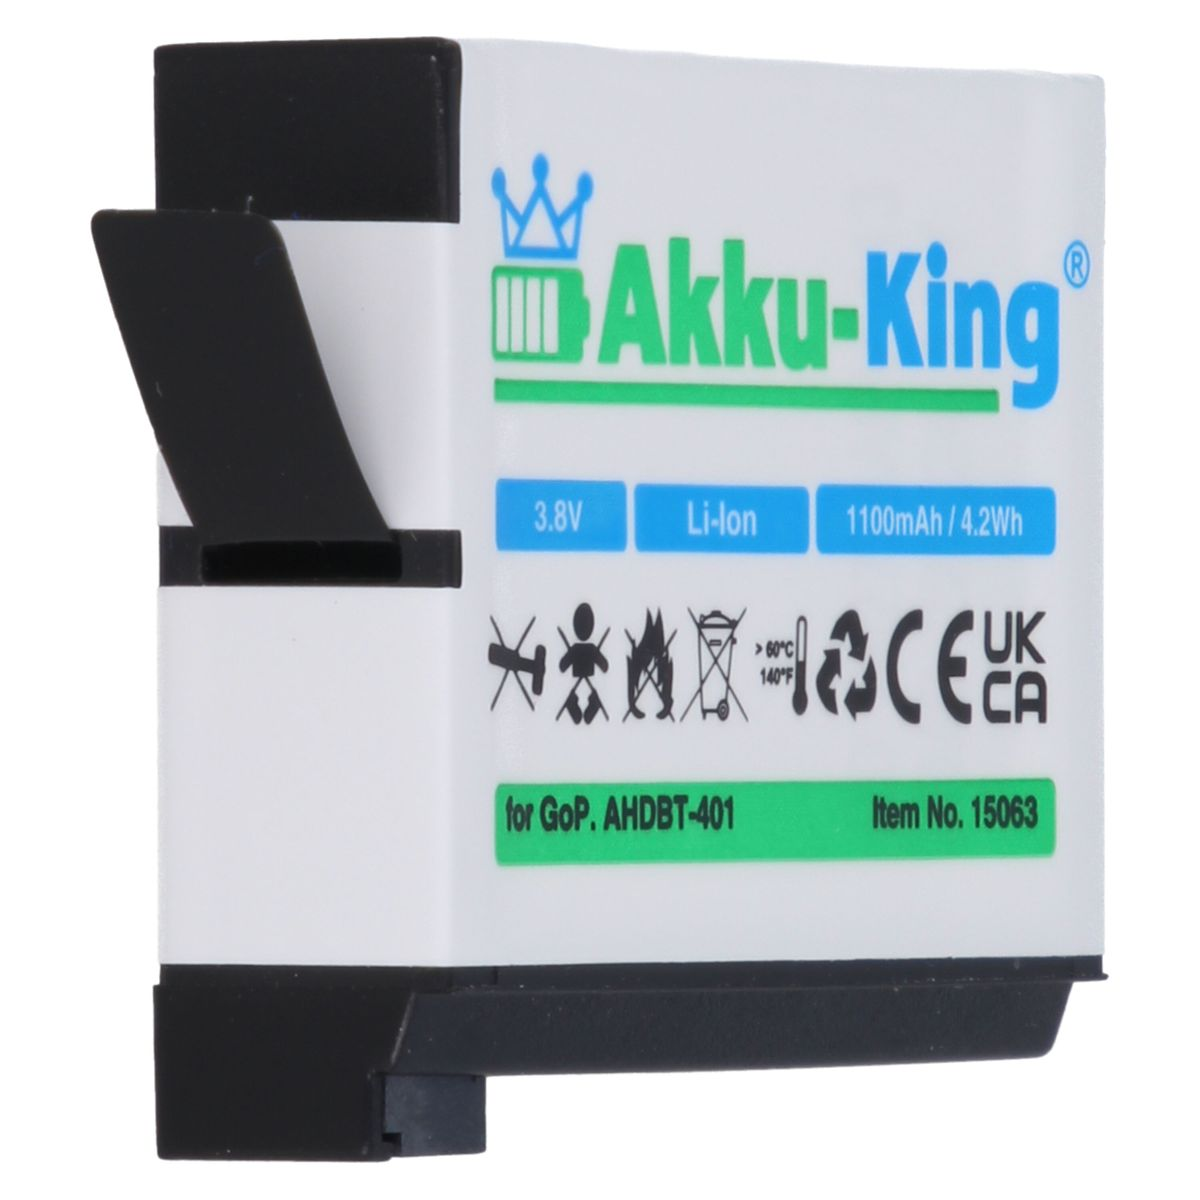 kompatibel GoPro Kamera-Akku, AKKU-KING 3.8 mit AHDBT-401 Volt, 1100mAh Akku Li-Ion